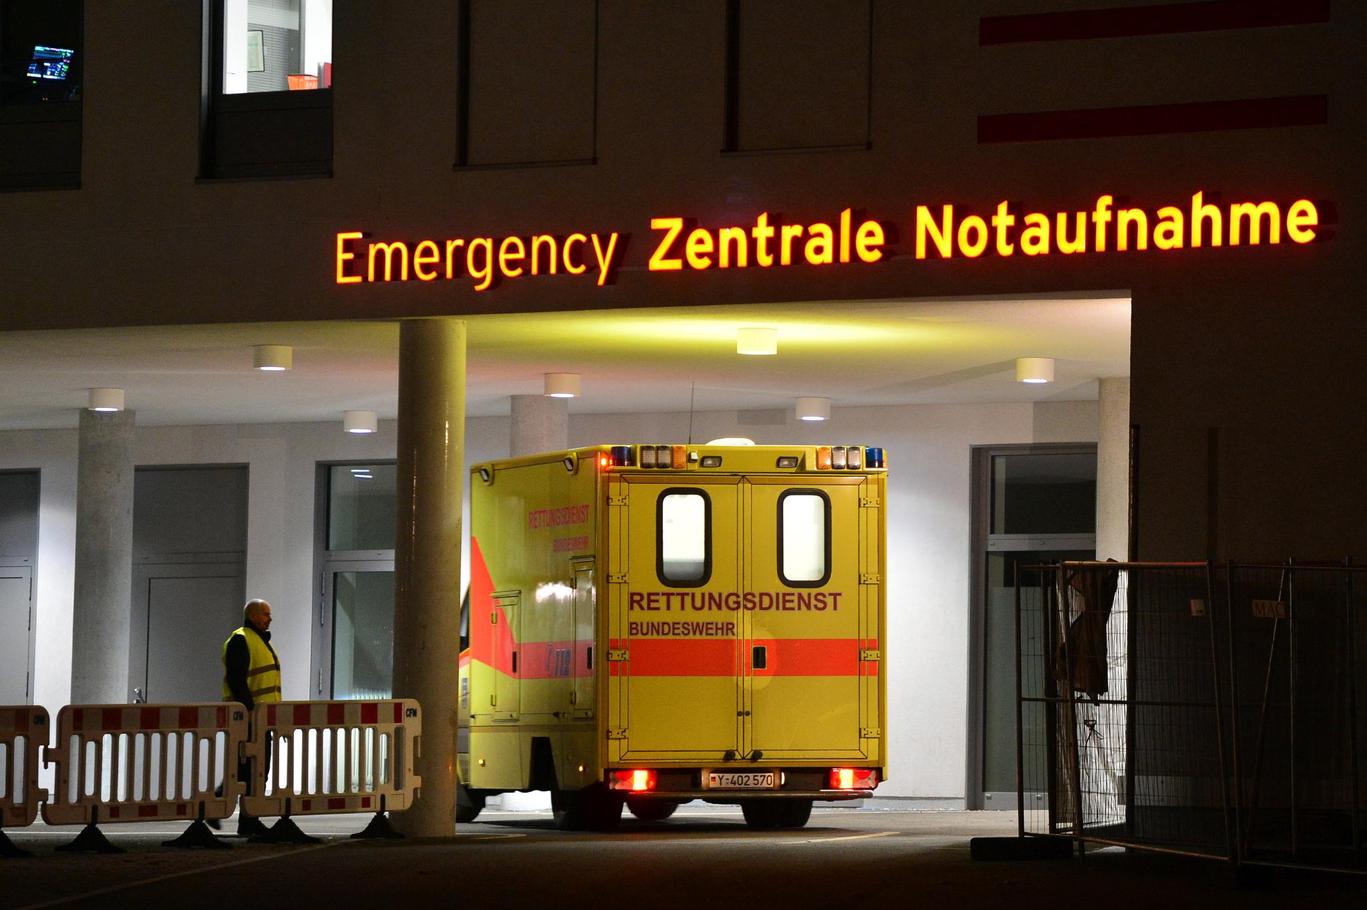 Beschäftigte aus Berliner Krankenhäusern schreiben offenen Brief an den Senat